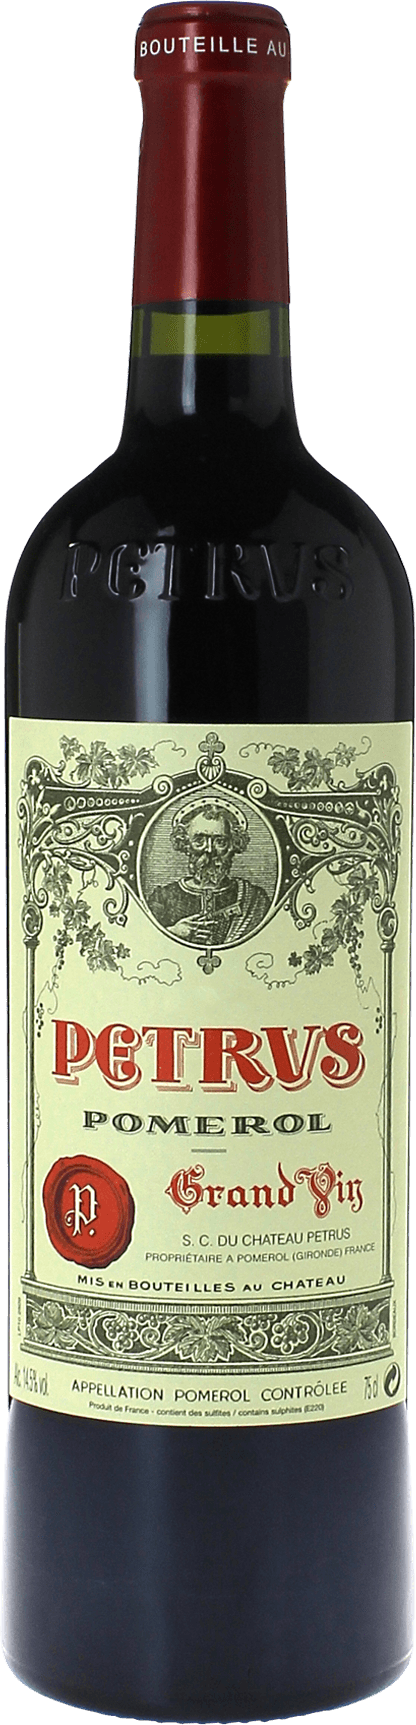 Petrus 1975  Pomerol, Bordeaux rouge